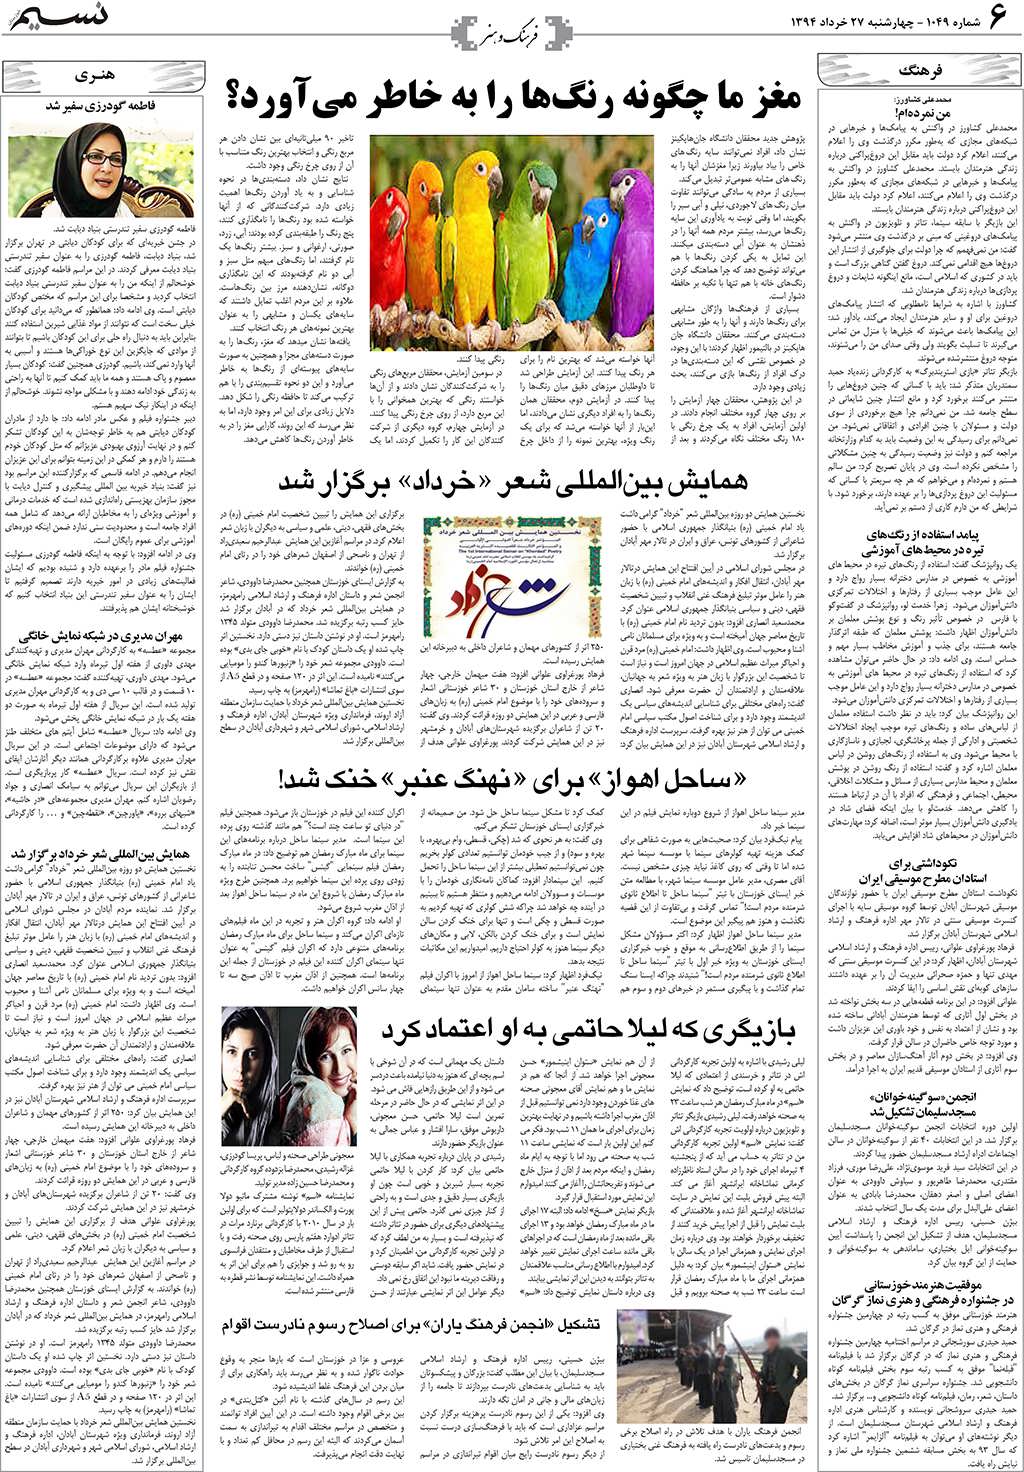 صفحه فرهنگ و هنر روزنامه نسیم شماره 1049